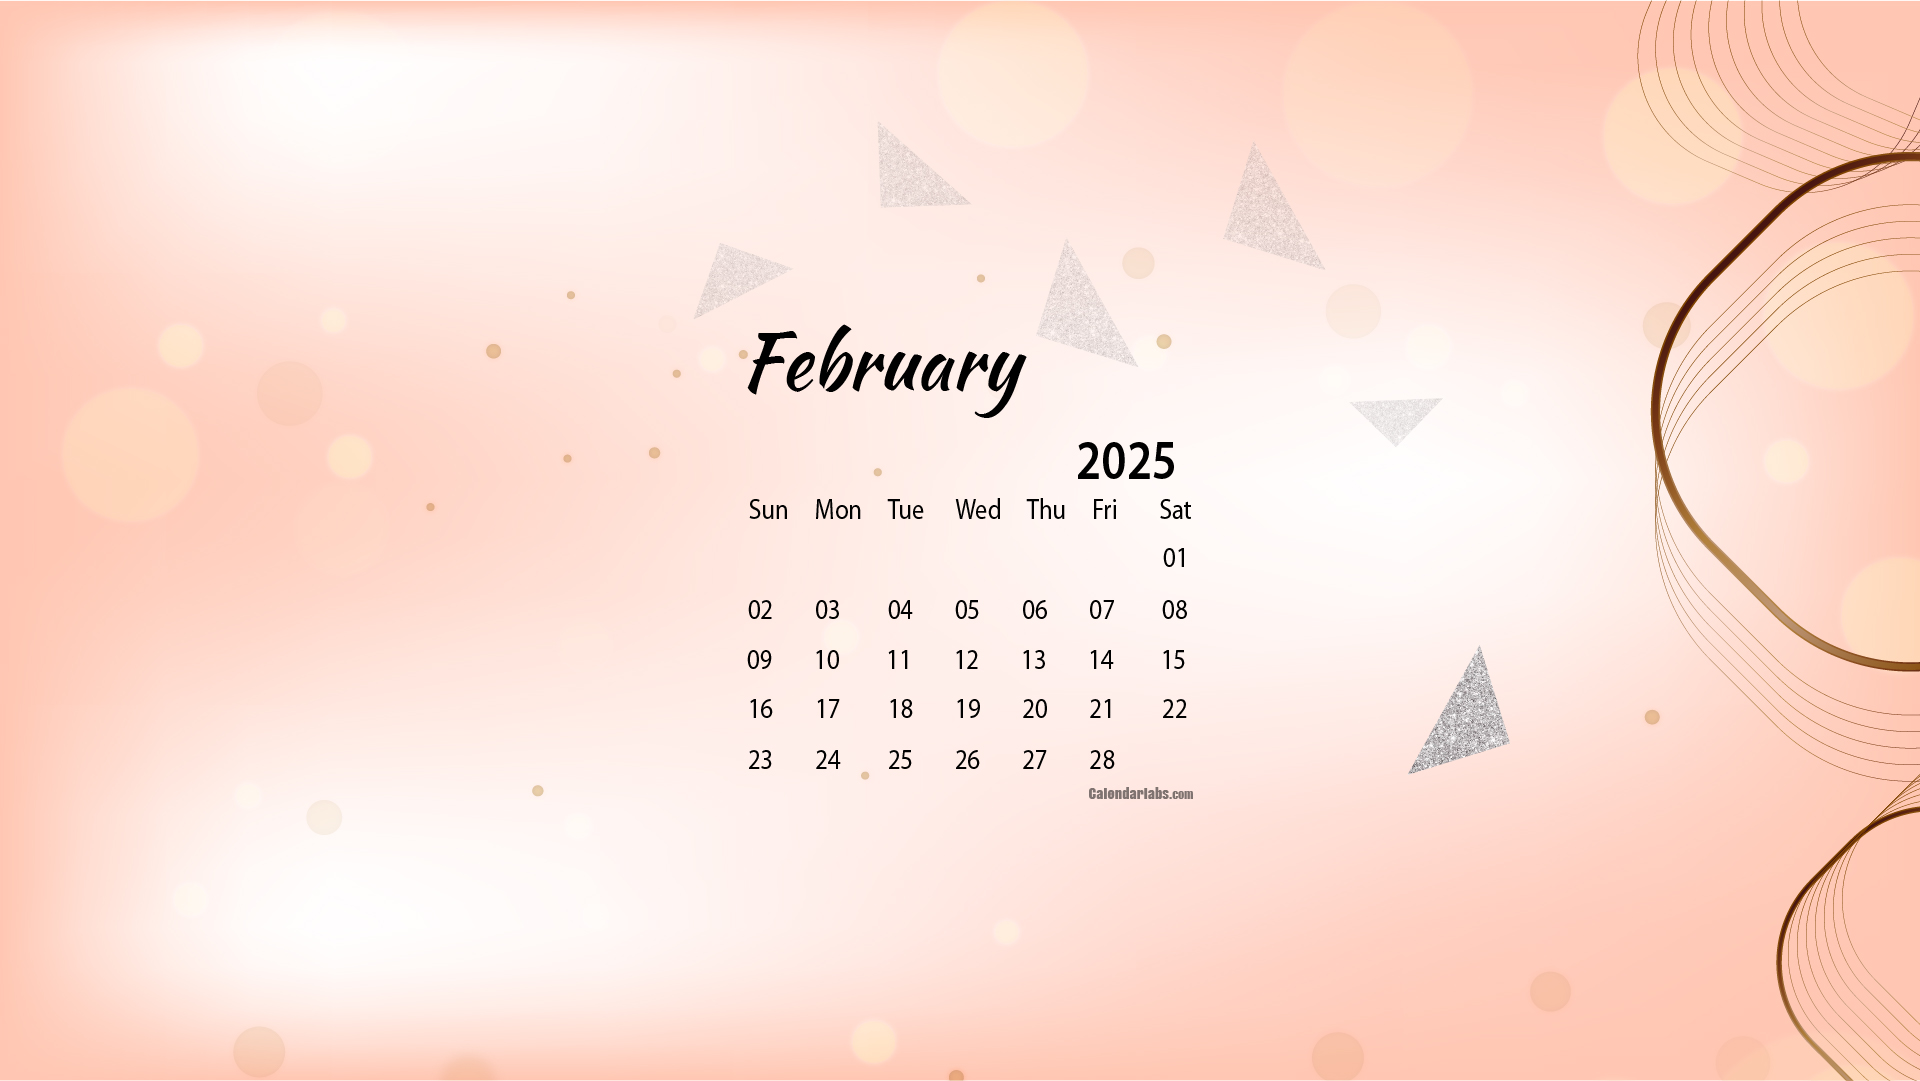 February 2025 Desktop Wallpaper Calendar CalendarLabs